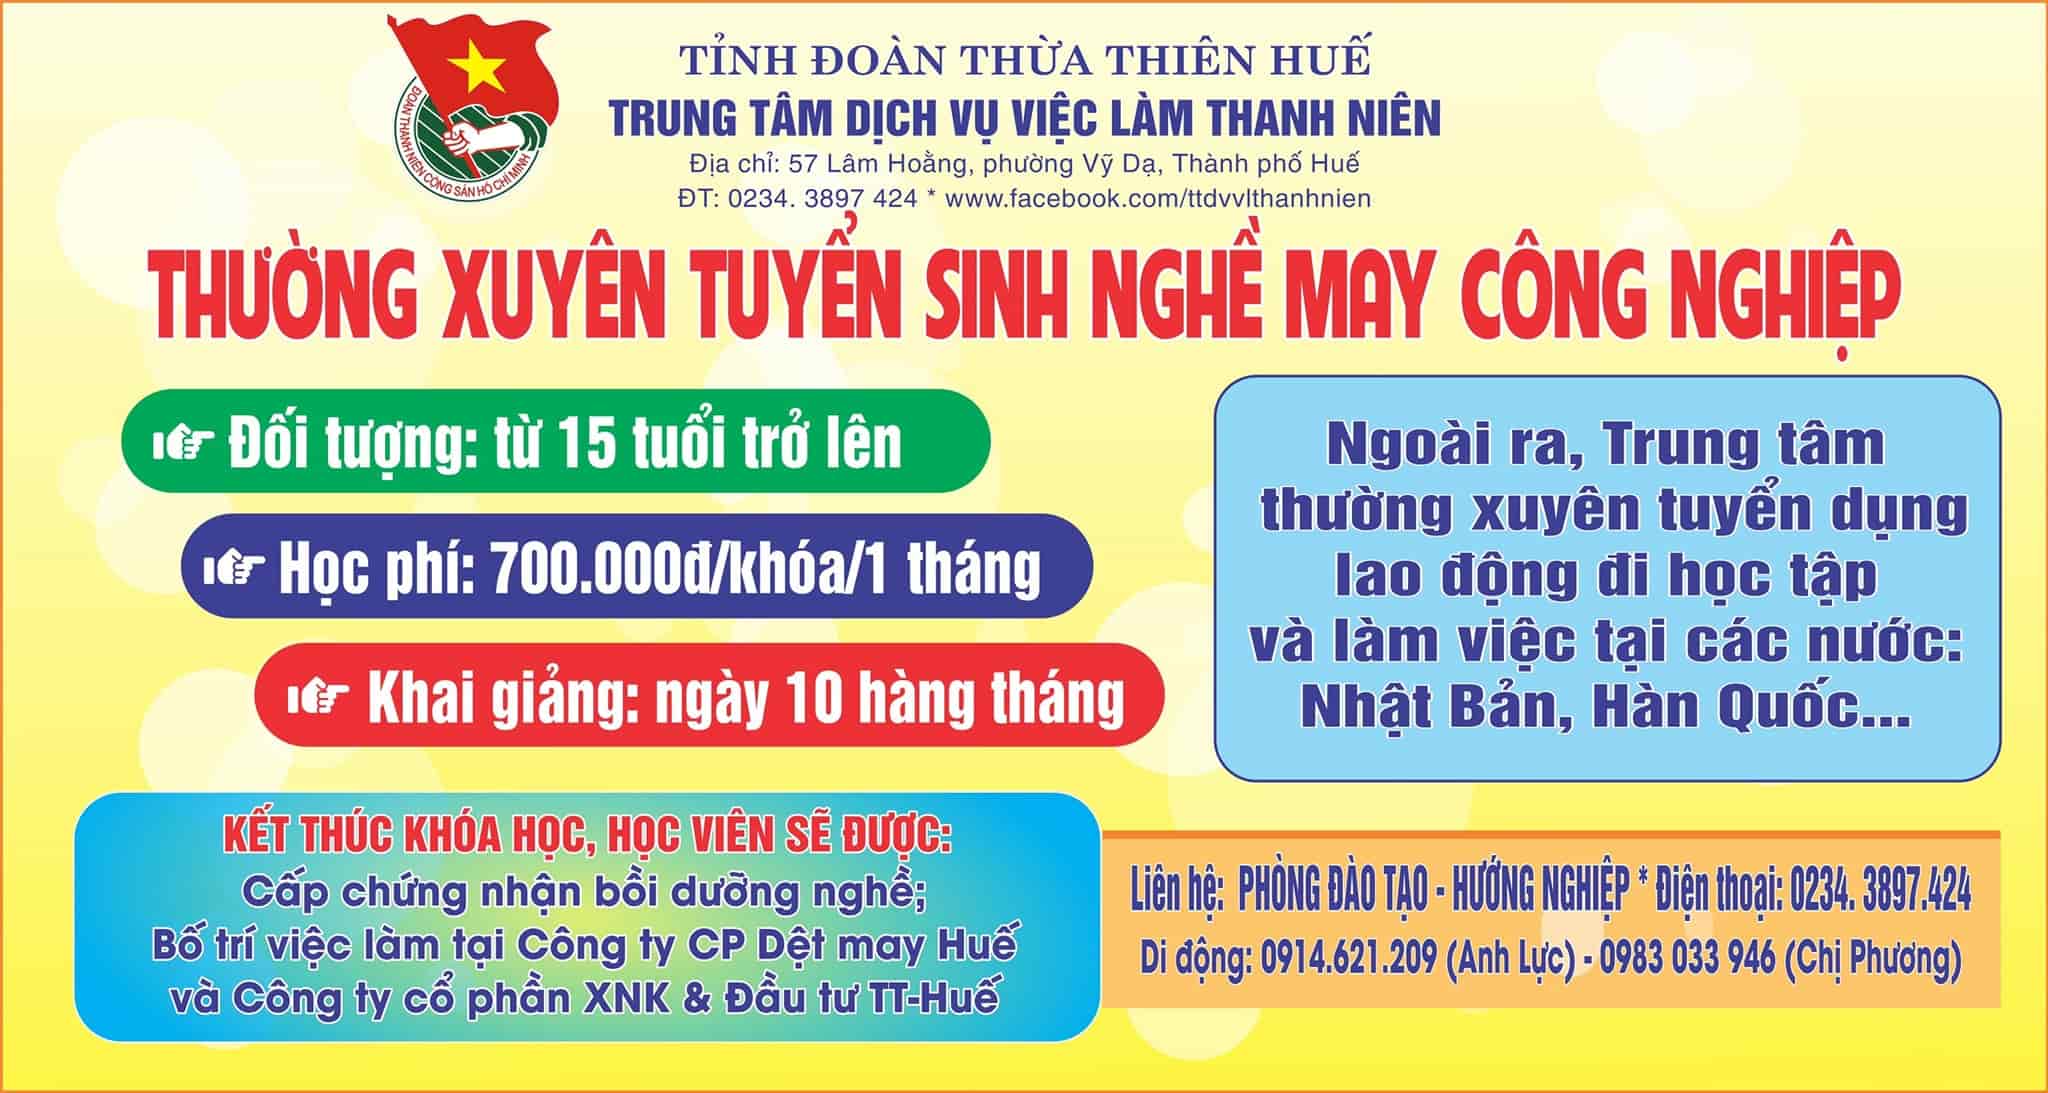 Trung Tâm Dịch Vụ Việc Làm Thanh Niên Thừa Thiên Huế